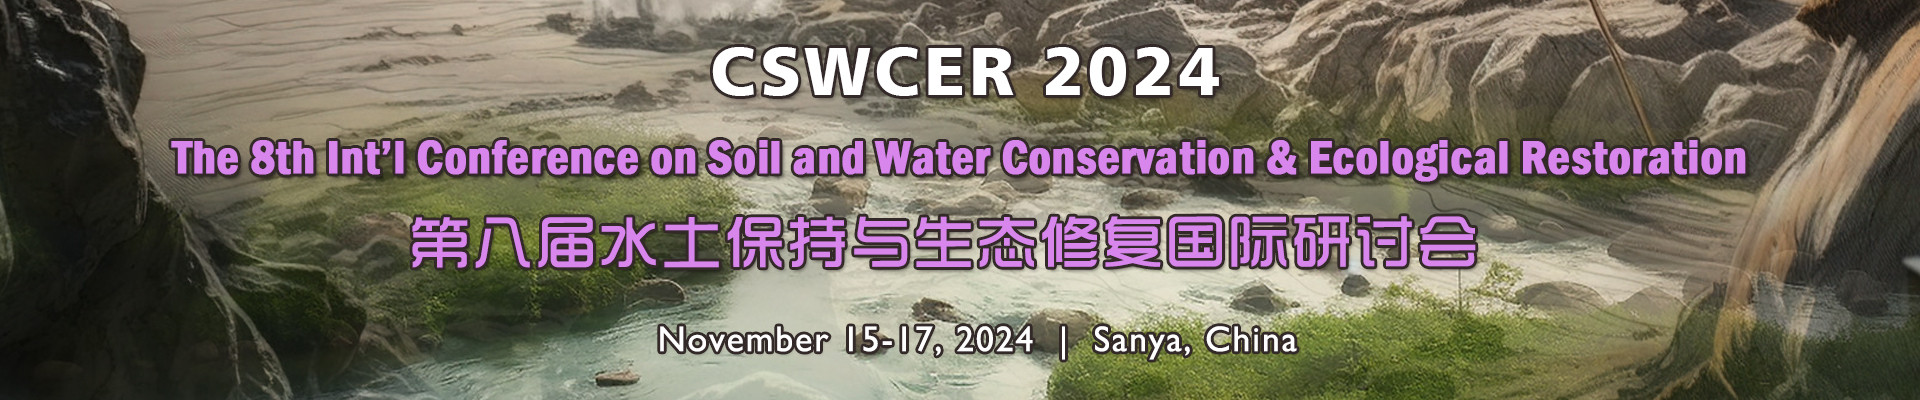 第八届水土保持与生态修复国际研讨会(CSWCER 2024) 